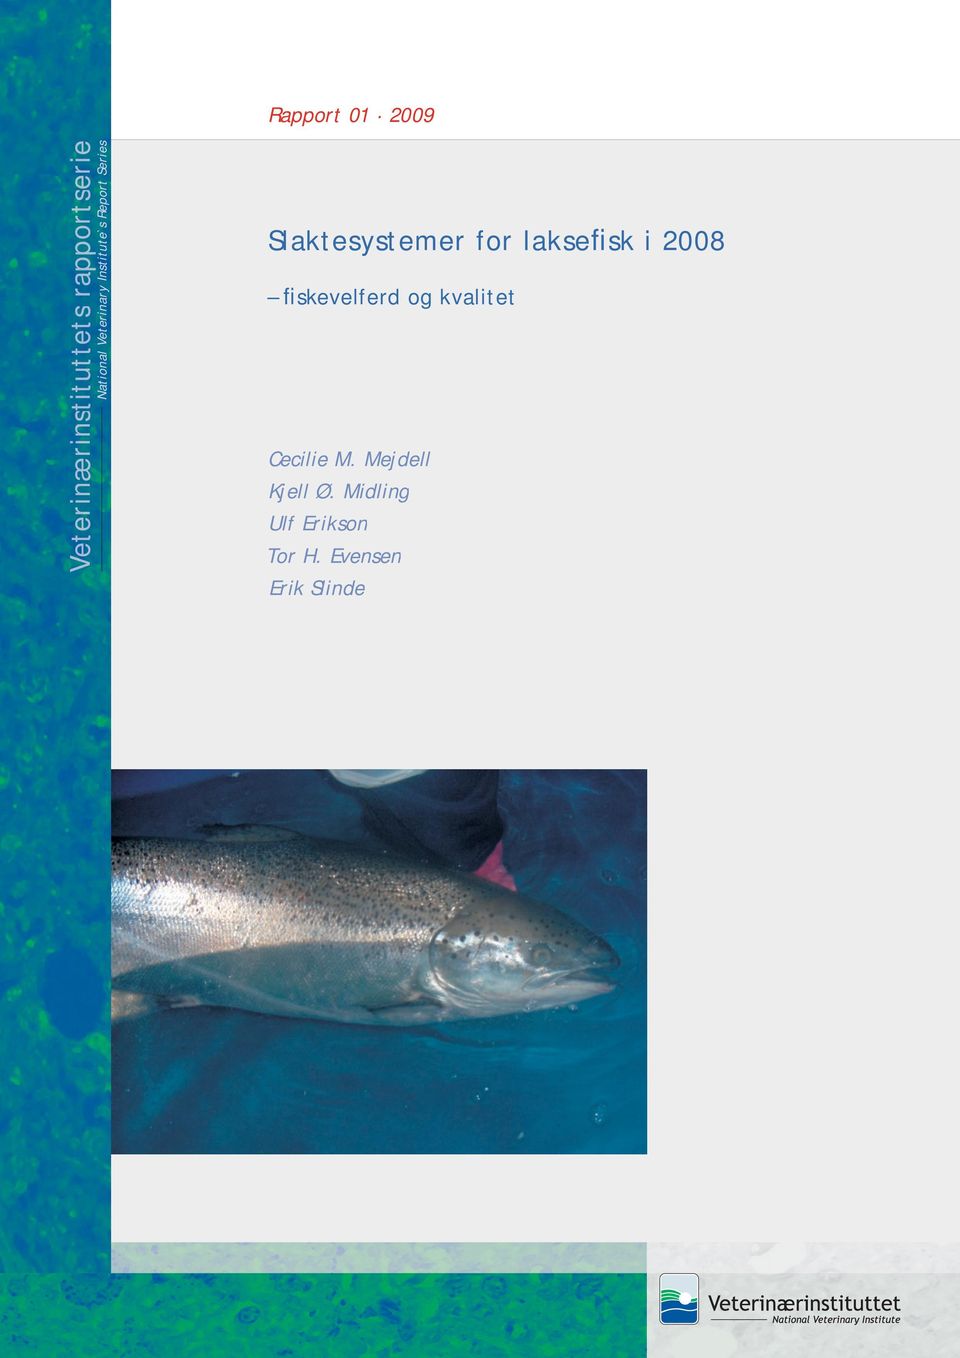 Slaktesystemer for laksefisk i 2008 fiskevelferd og